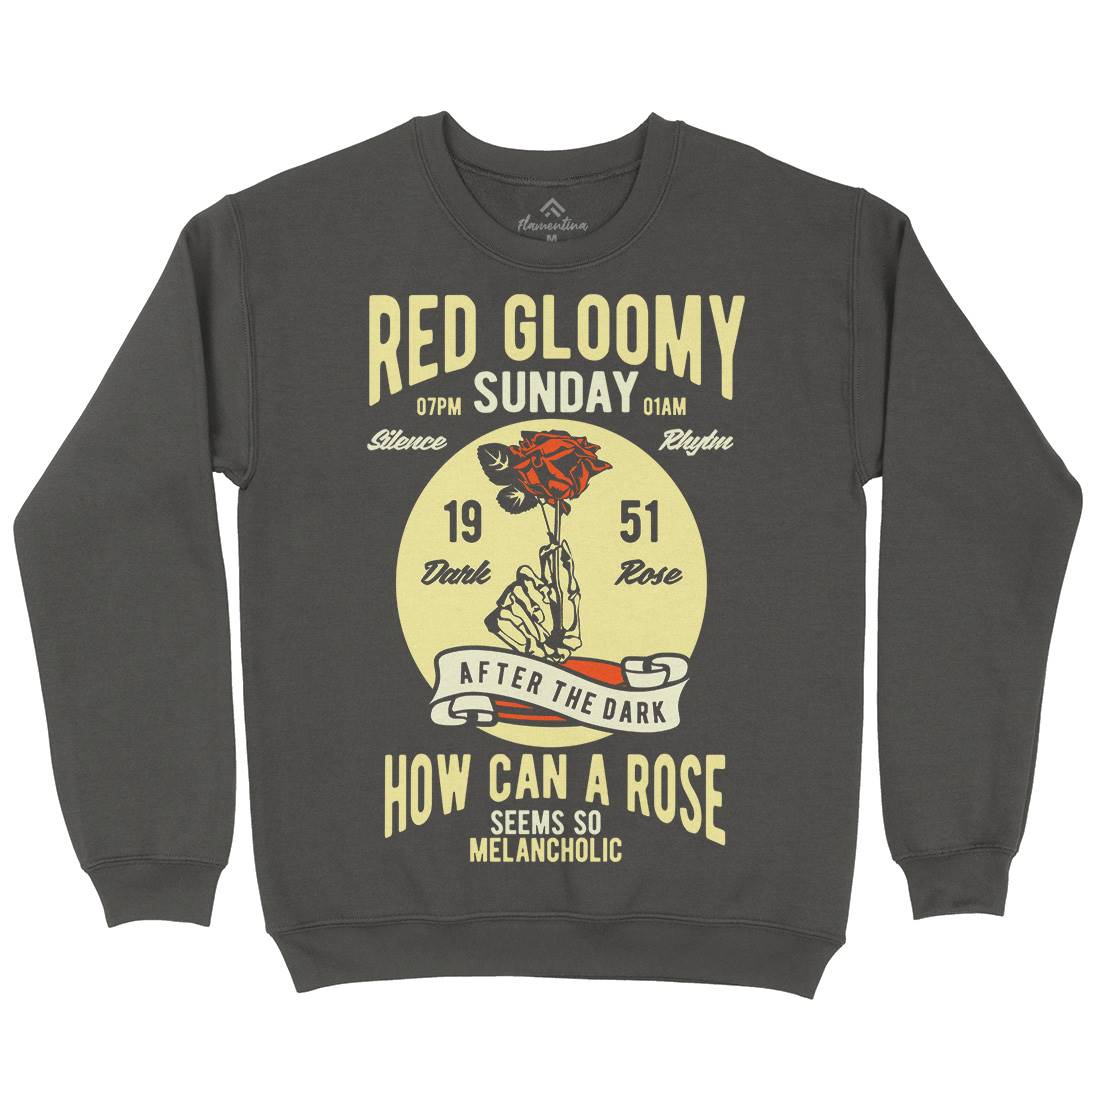 Red Gloomy Sunday Kids Crew Neck Sweatshirt Retro B437